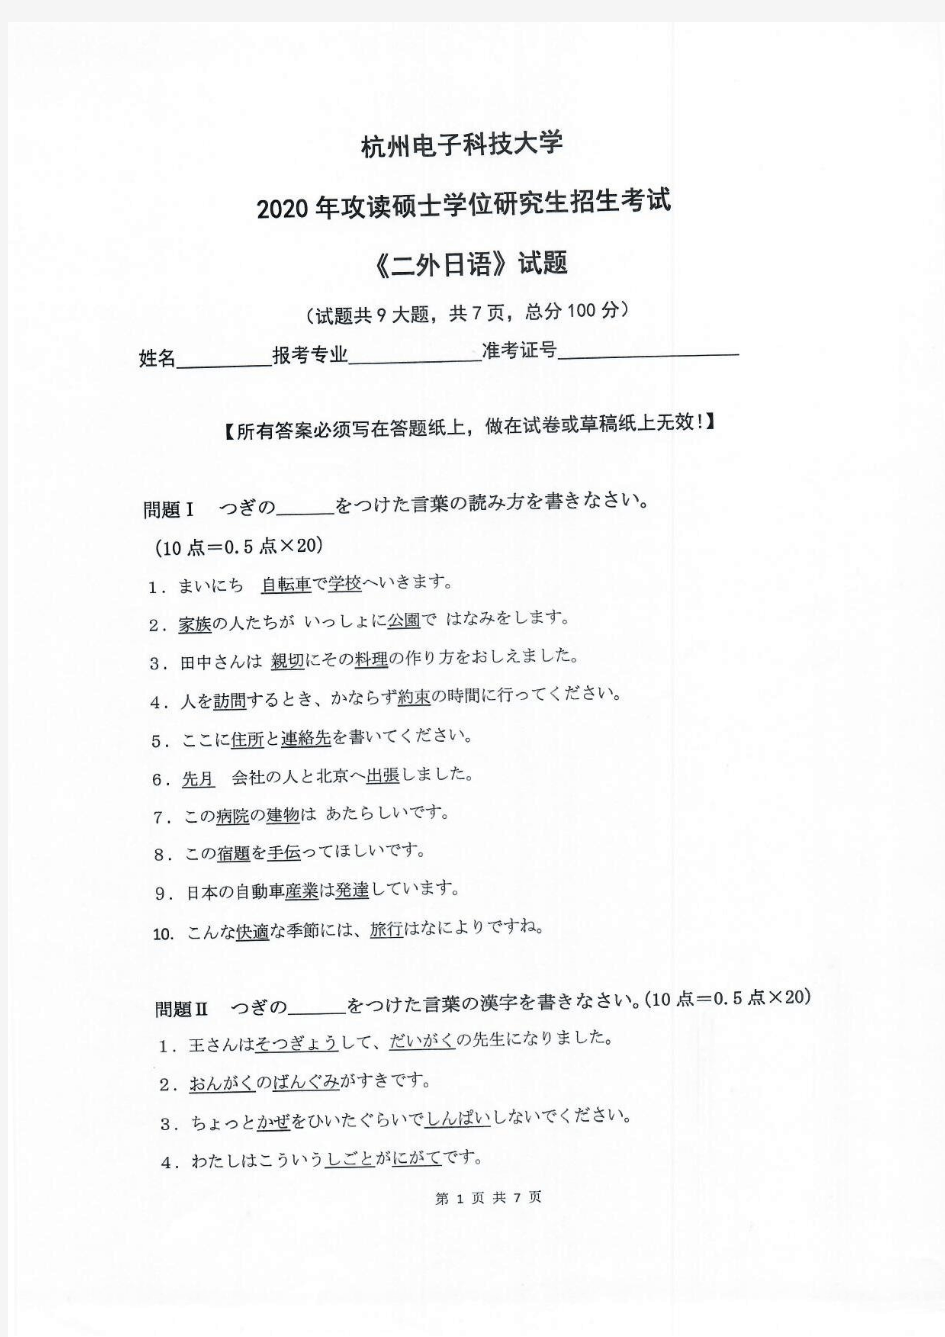 二外日语-杭州电子科技大学2020年攻读硕士学位研究生招生考试试题